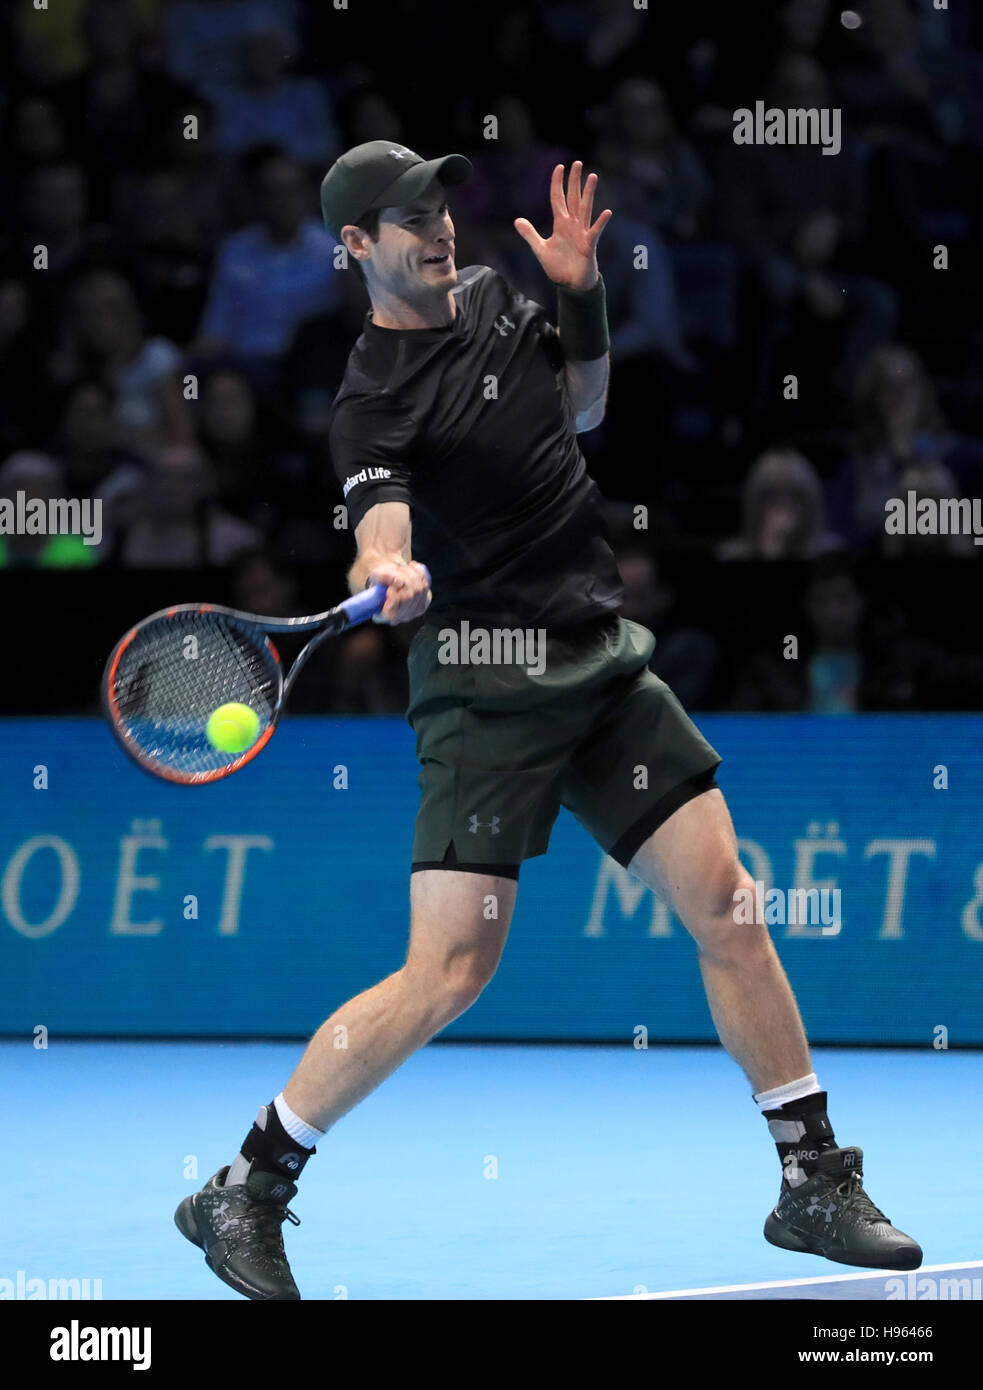 Andy Murray en action dans son match avec Stan Wawrinka pendant le sixième jour des finales du Barclays ATP World Tour à l'O2, Londres. APPUYEZ SUR ASSOCIATION photo. Date de la photo : vendredi 18 novembre 2016. Voir PA Story TENNIS Londres. Le crédit photo devrait se lire comme suit : Adam Davy/PA Wire. Banque D'Images